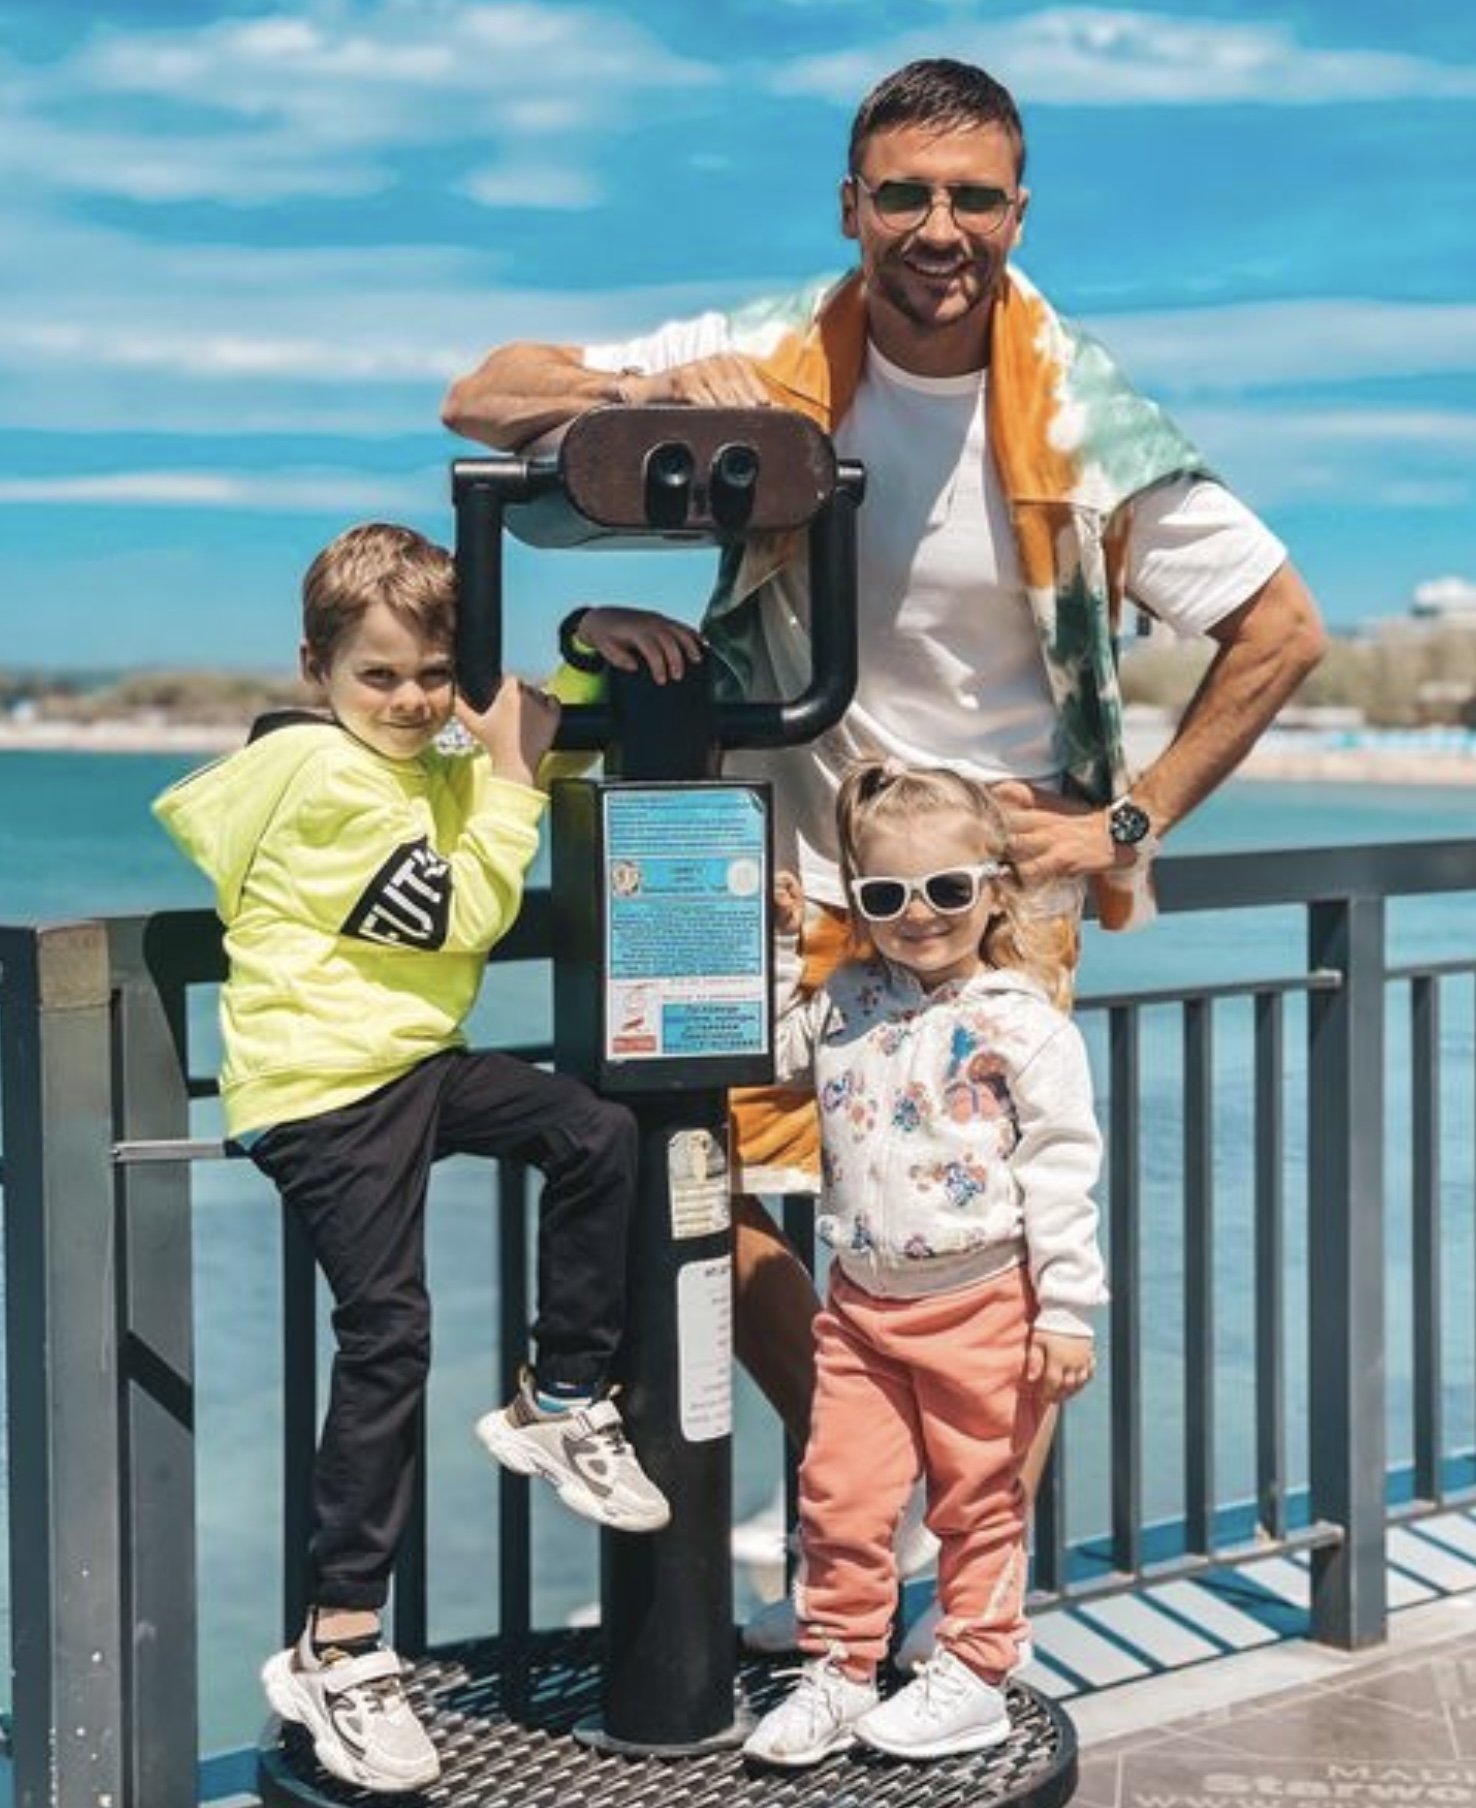 Сергей Лазарев показал солнечное фото со своими детьми 